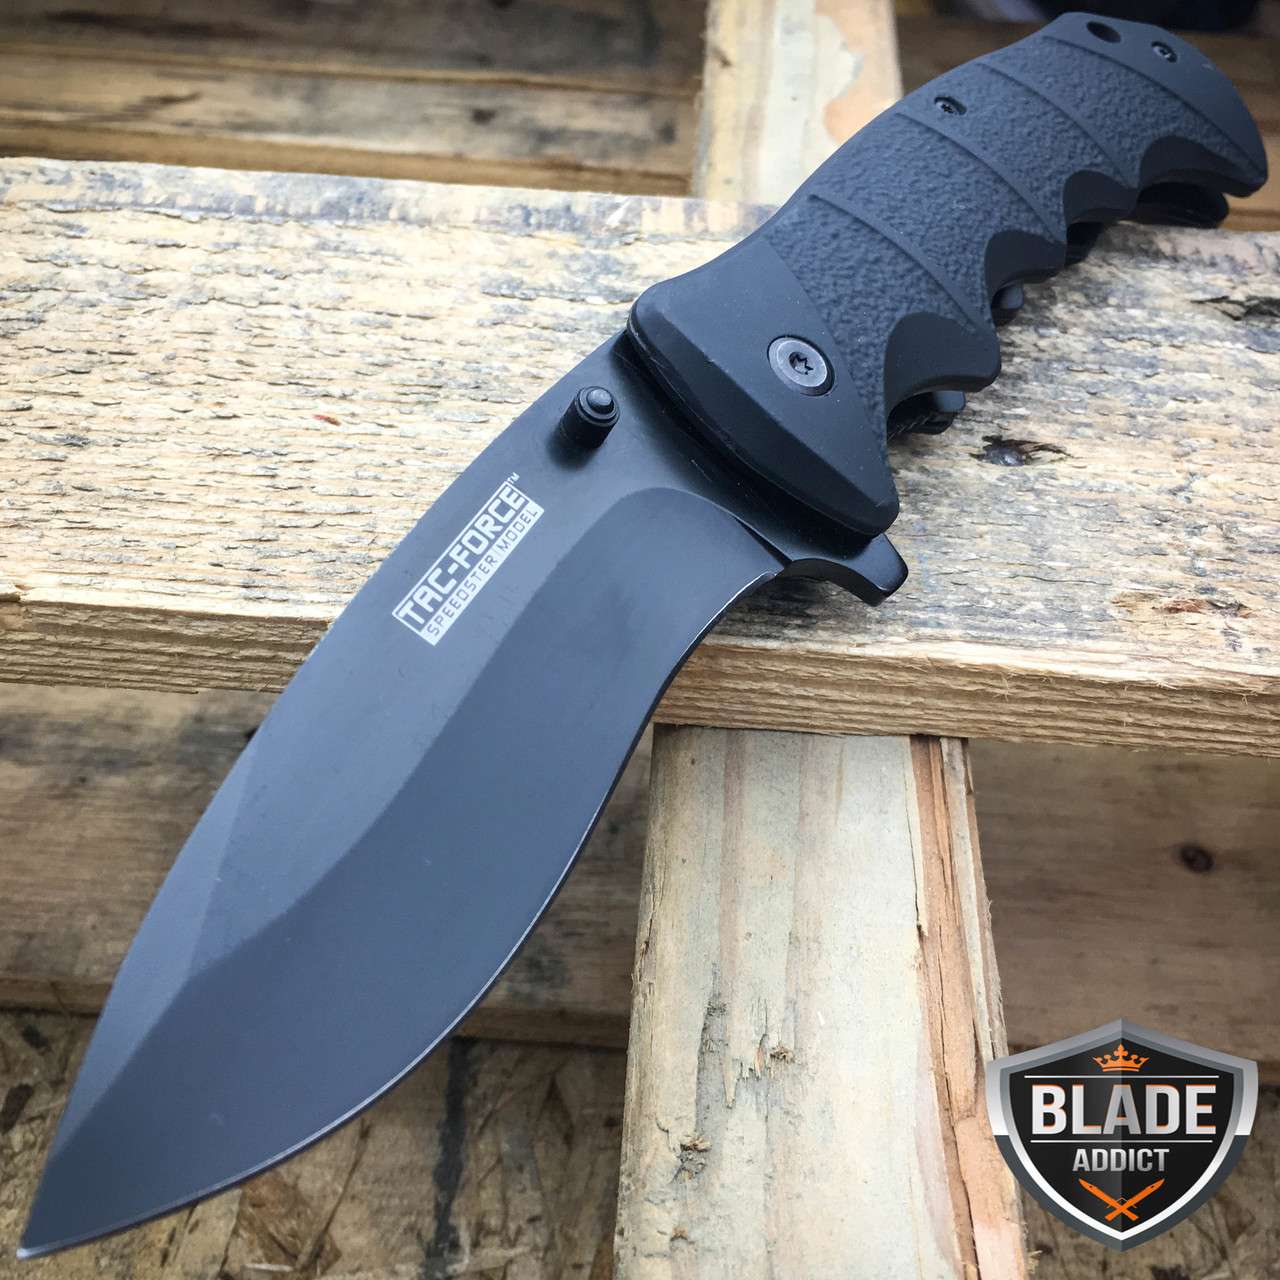 TAC FORCE Spring Assisted Opening BLACK TACTICAL Pocket Knife Folding Blade